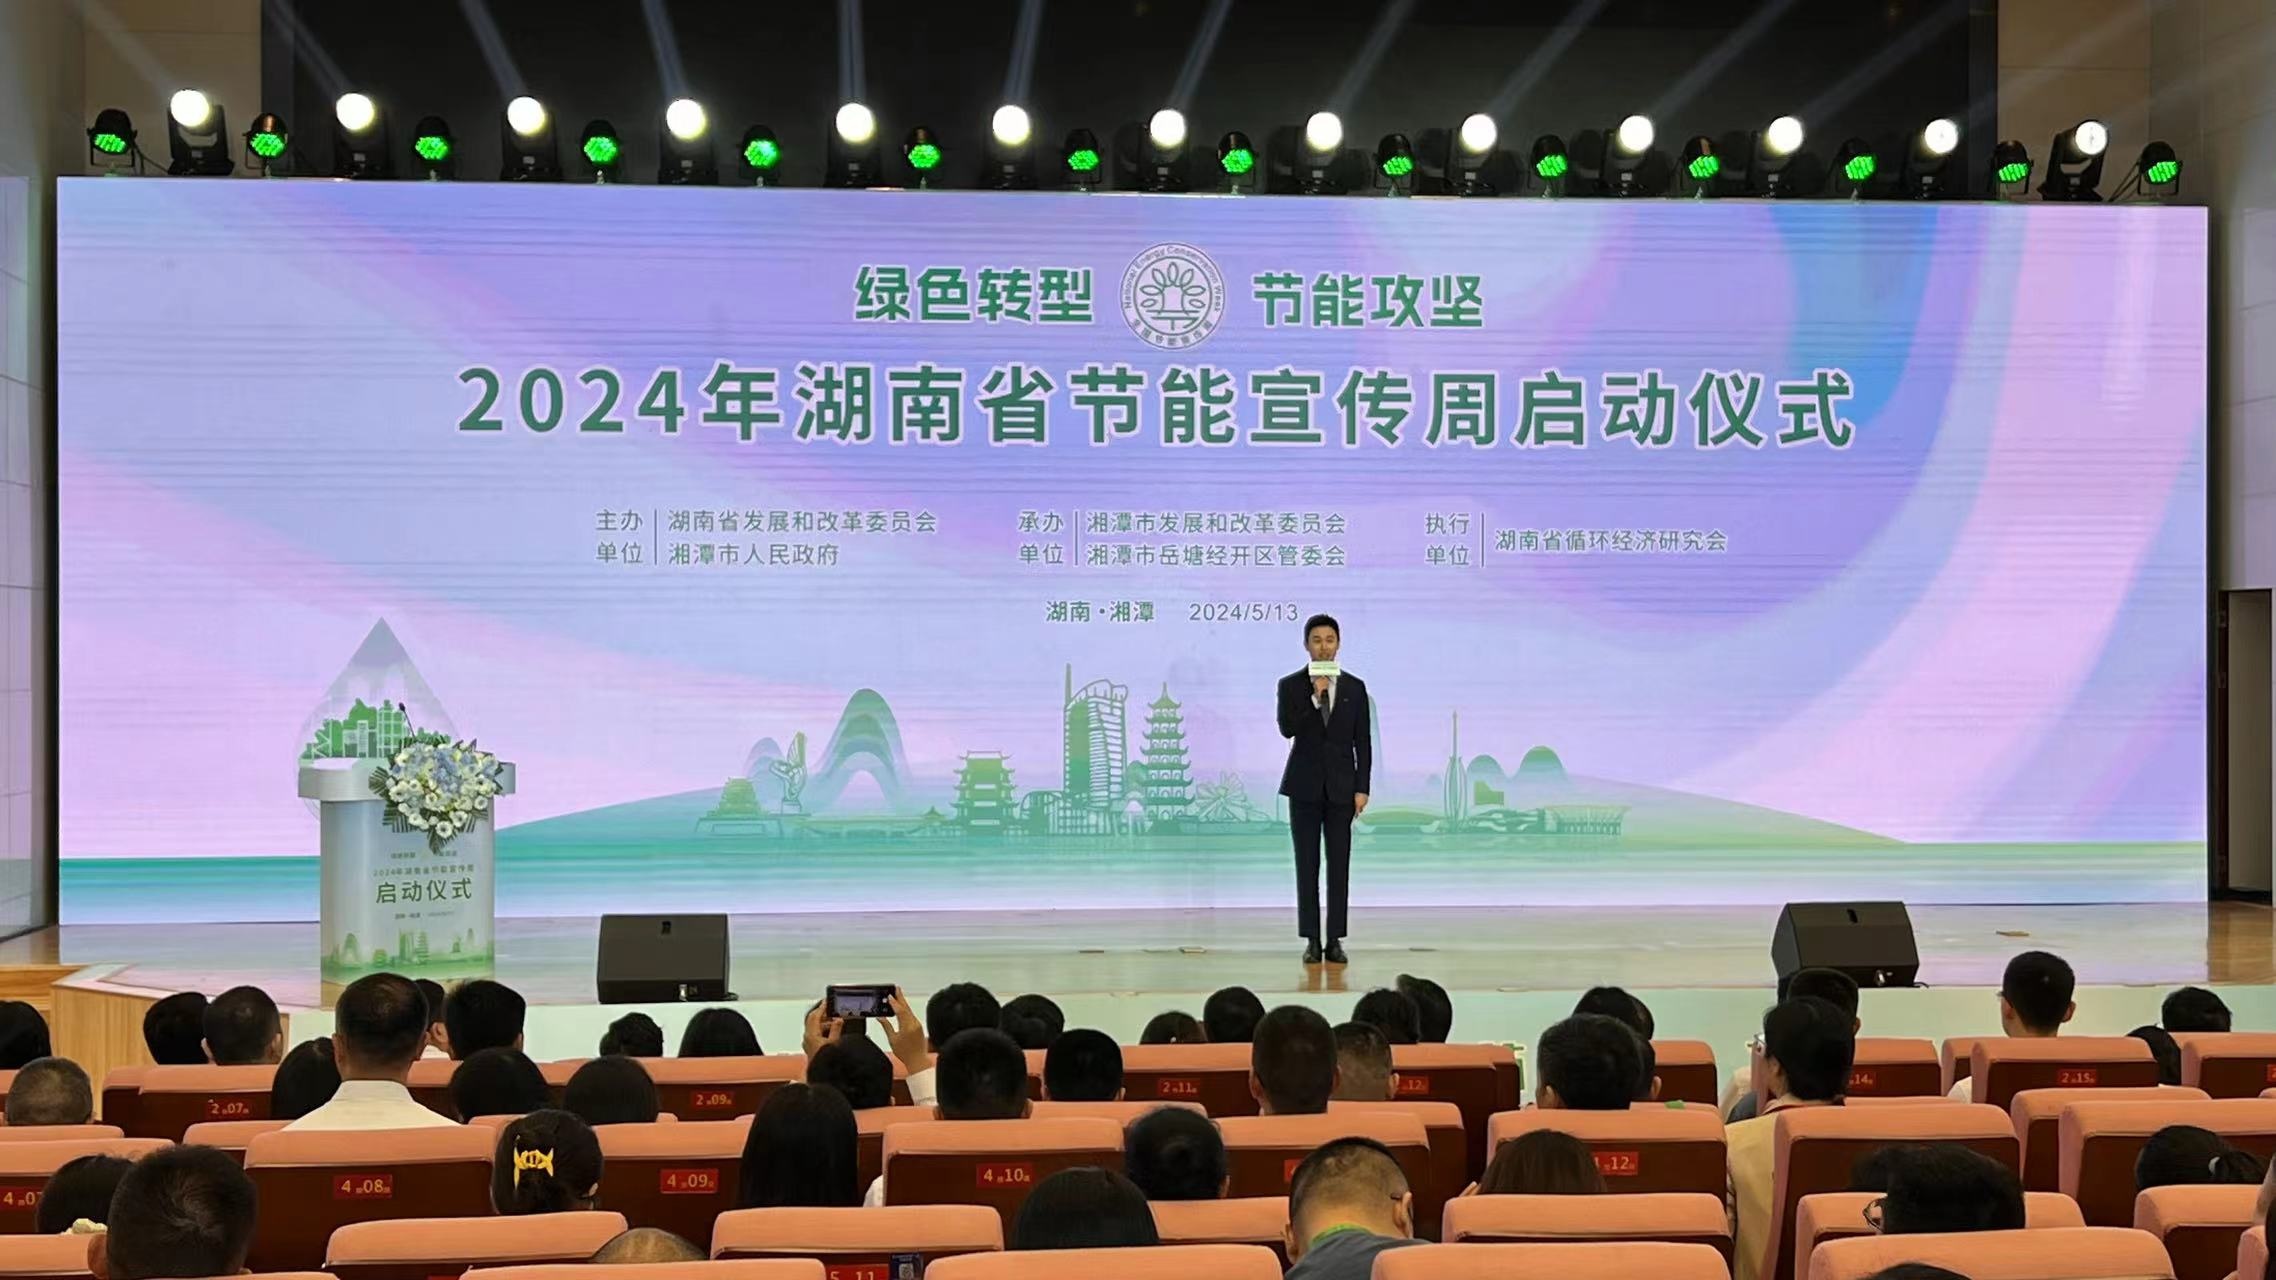 2024年湖南省節能宣傳周拉開序幕